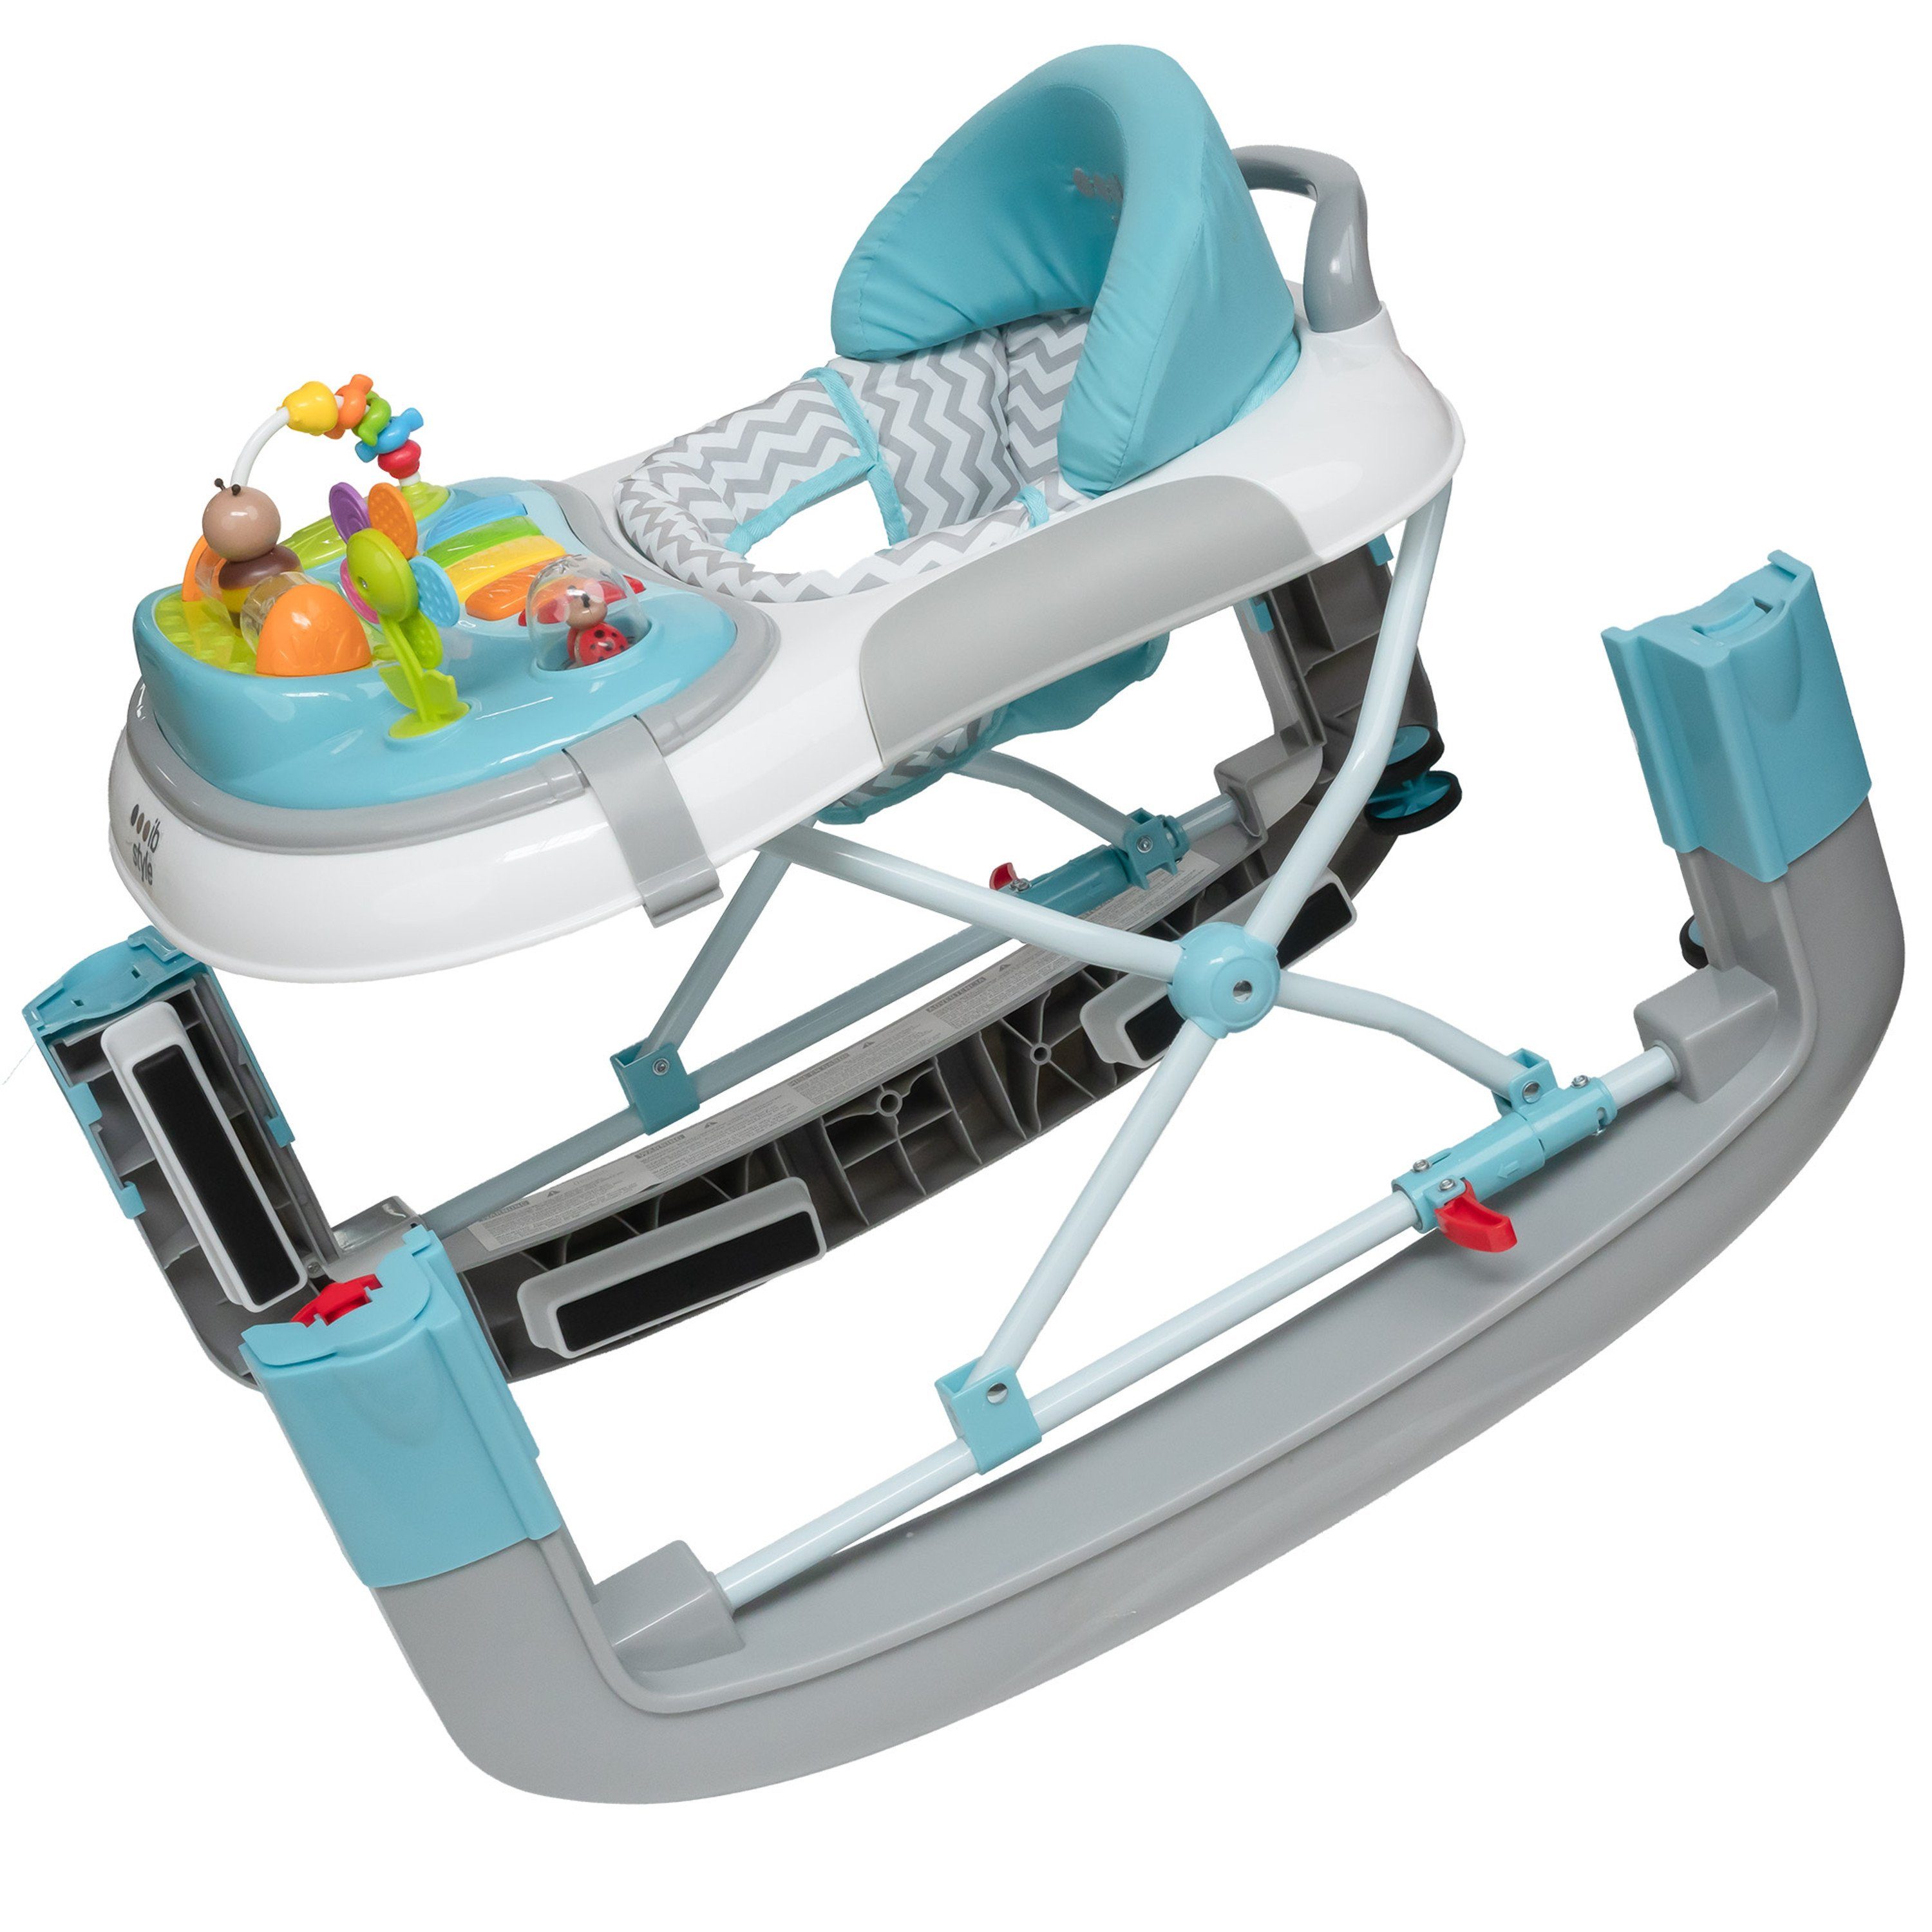 ib style Lauflernhilfe mit Lauflernwagen Wave Mint, Babywalker & elektronischem Spielelement Schaukelfunktion